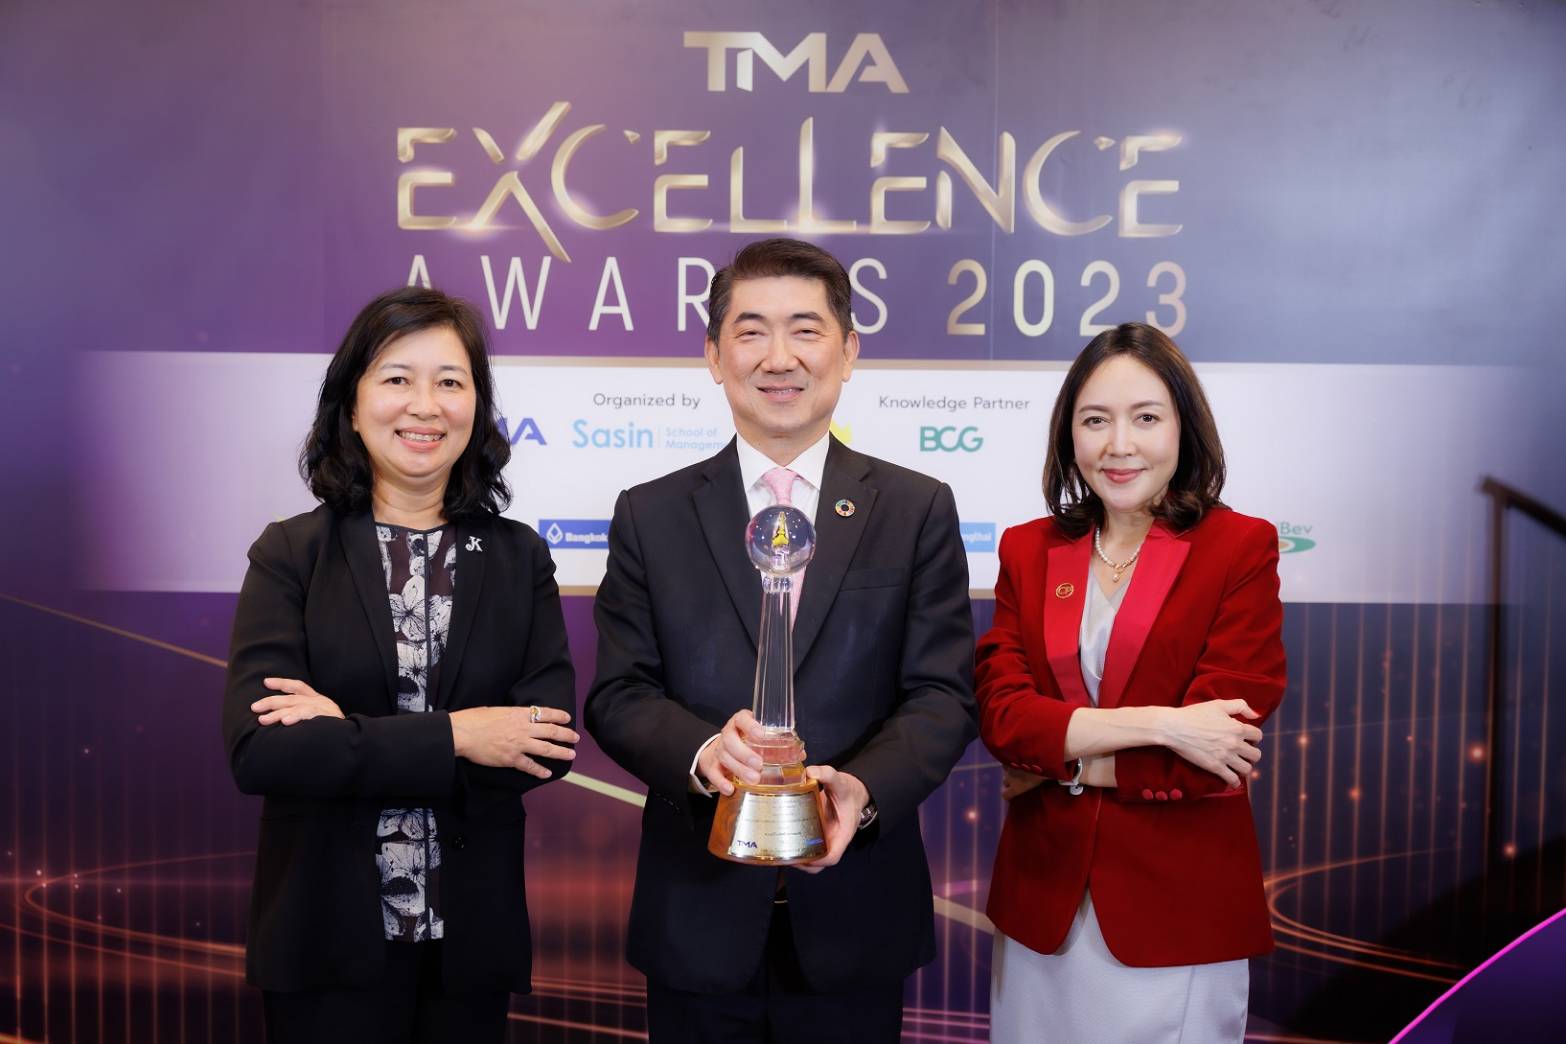 “ไก่ไทยจะไปอวกาศ" ของซีพีเอฟ รับรางวัลพระราชทาน  Thailand Corporate Excellence Awards 2023 สาขาความเป็นเลิศด้านการตลาด